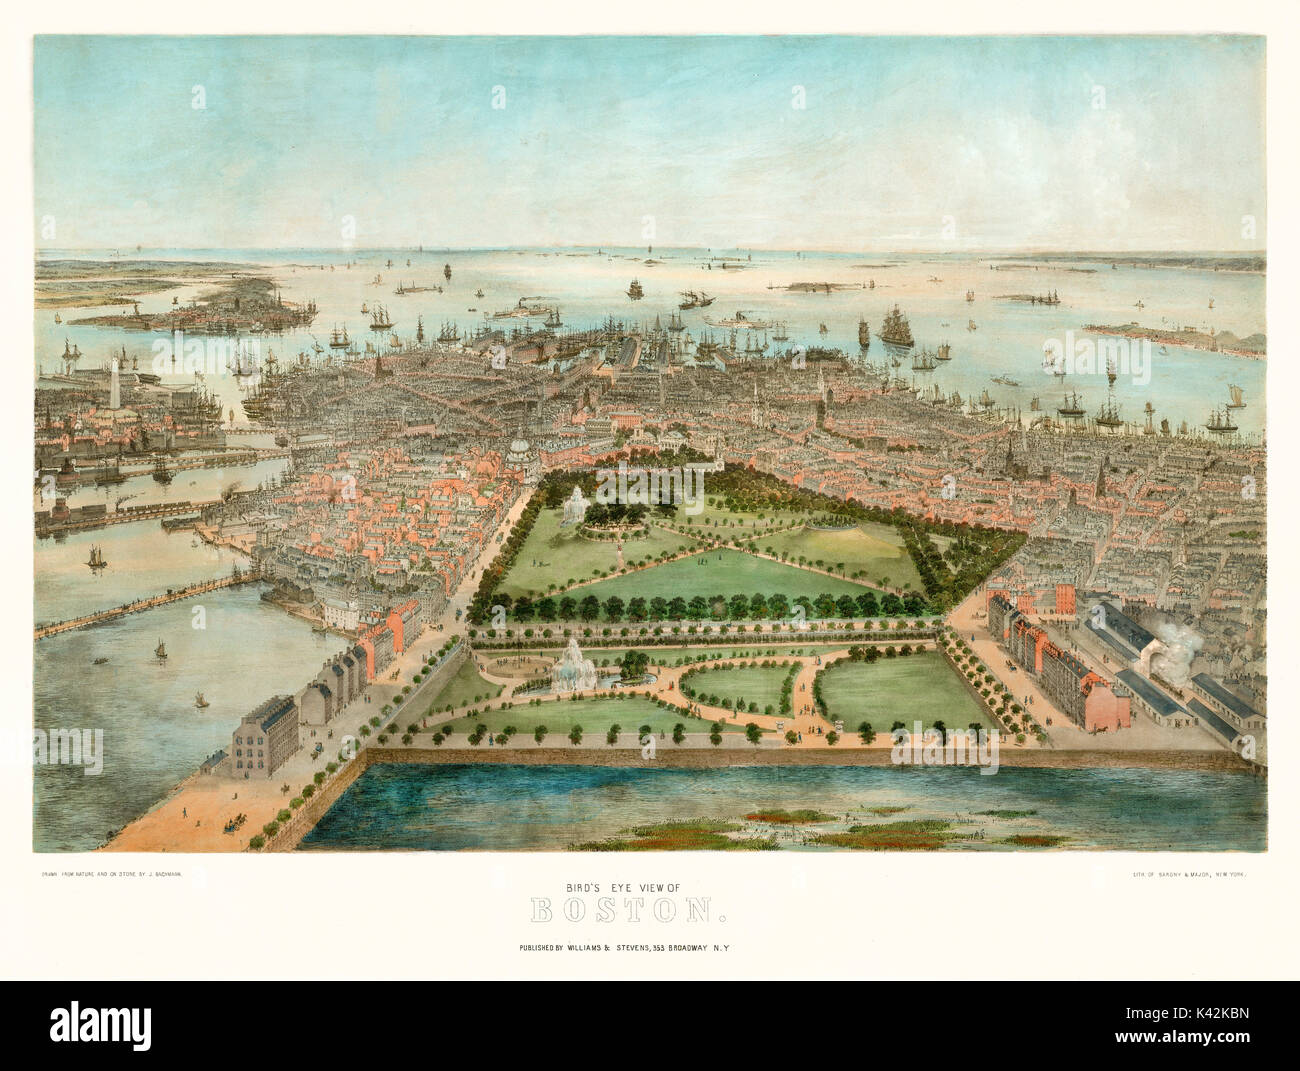 Alte Luftaufnahme von Boston, Massachusetts. Von John Bachmann, publ erstellt. Steven & Williams, New York, 1850 Stockfoto